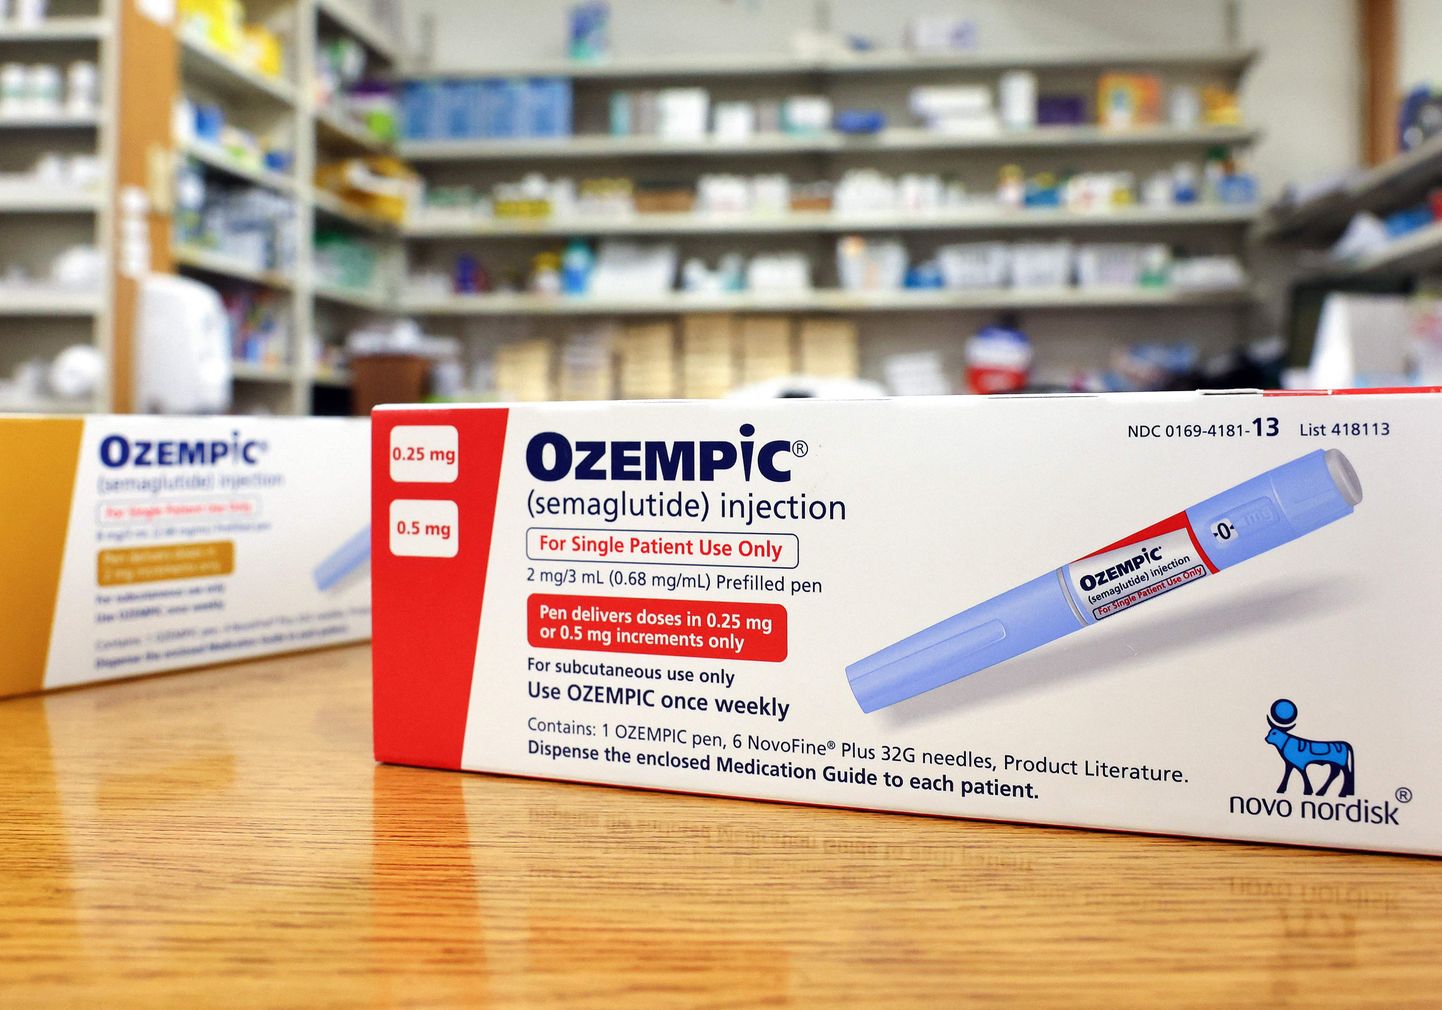 Ozempic - препарат для лечения диабета и снижения веса, выпускаемый компанией Novo Nordisk.